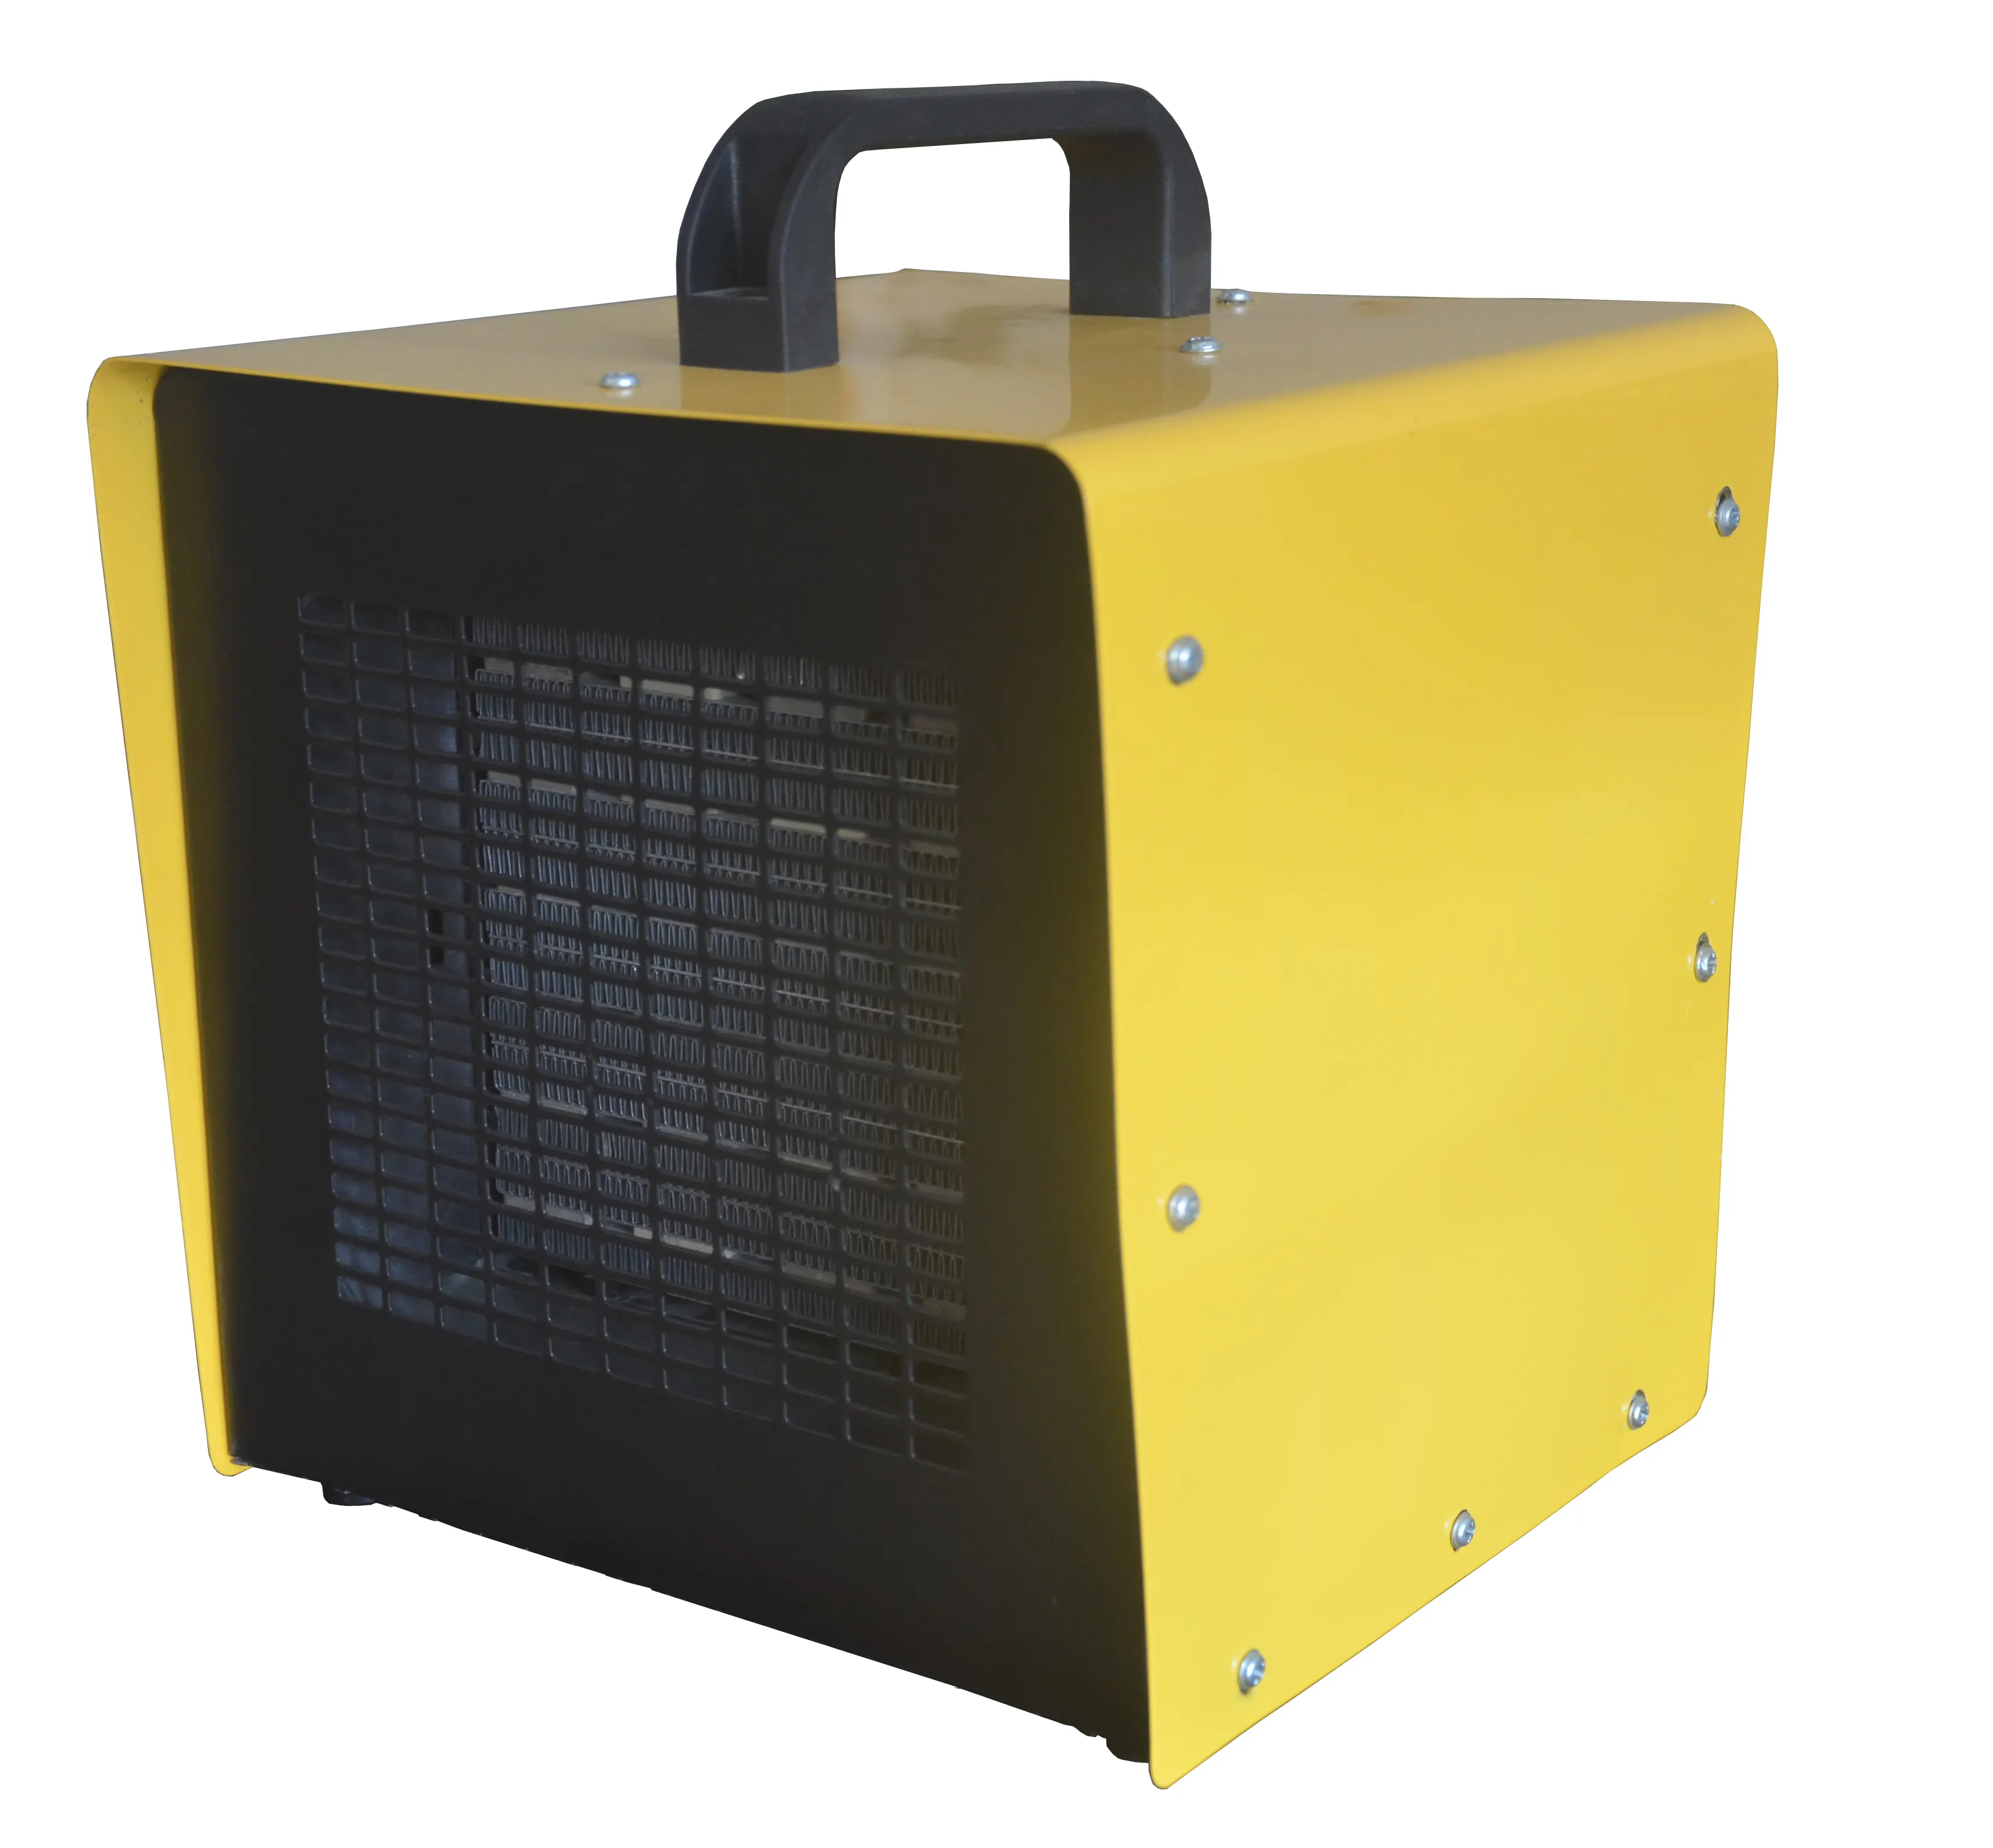 Fabricant industriel 3000w radiateurs électriques Ptc ventilateur chauffage à air forcé radiateurs électriques pour bureau à domicile lieu de travail